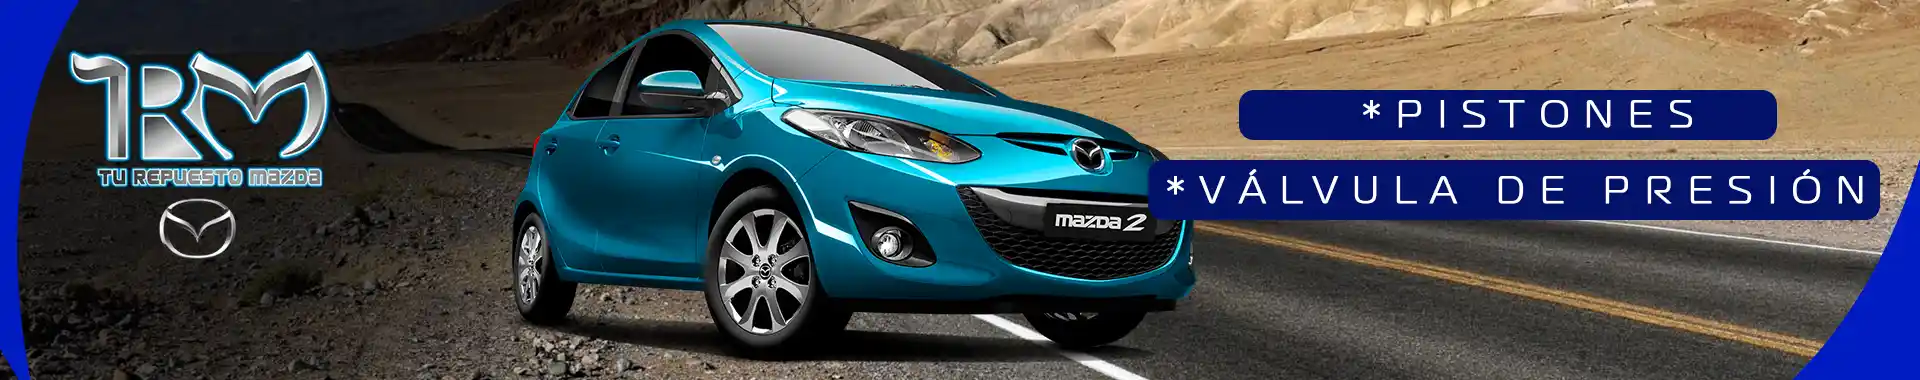 Imagen 6 del perfil de Tu Repuesto Mazda